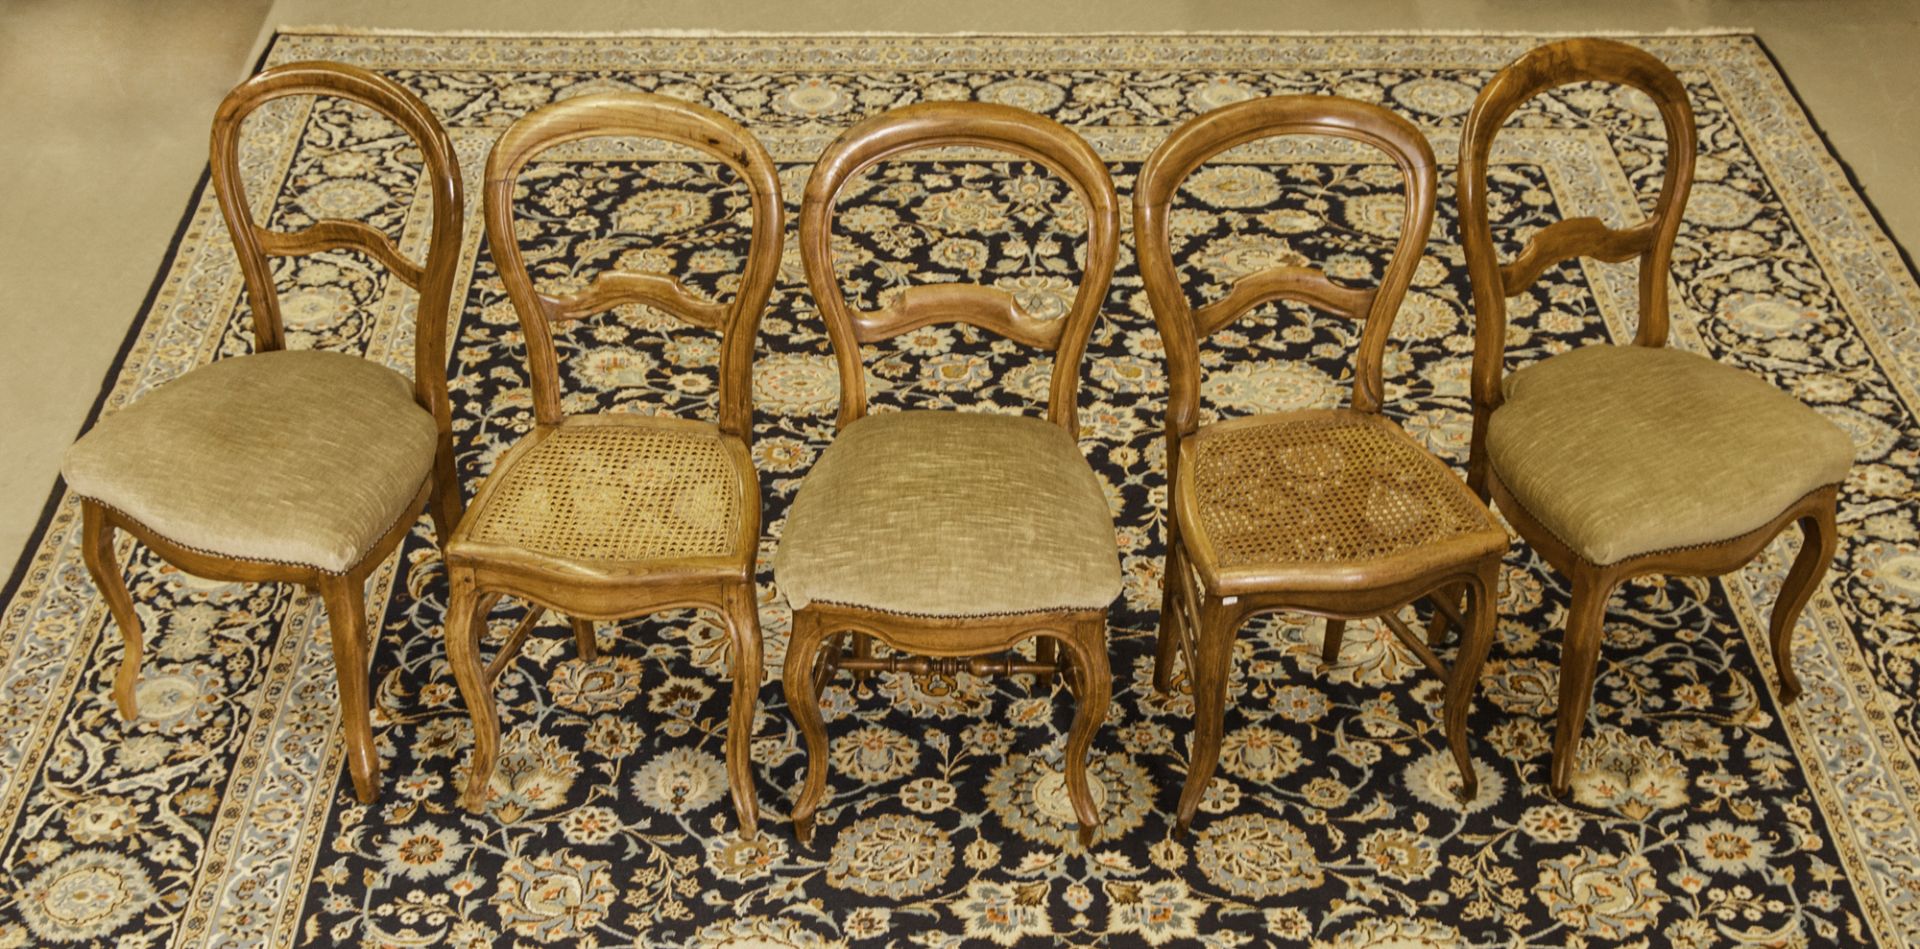 5 Salonstühle, deutsch, um 1860-80 - Bild 2 aus 2